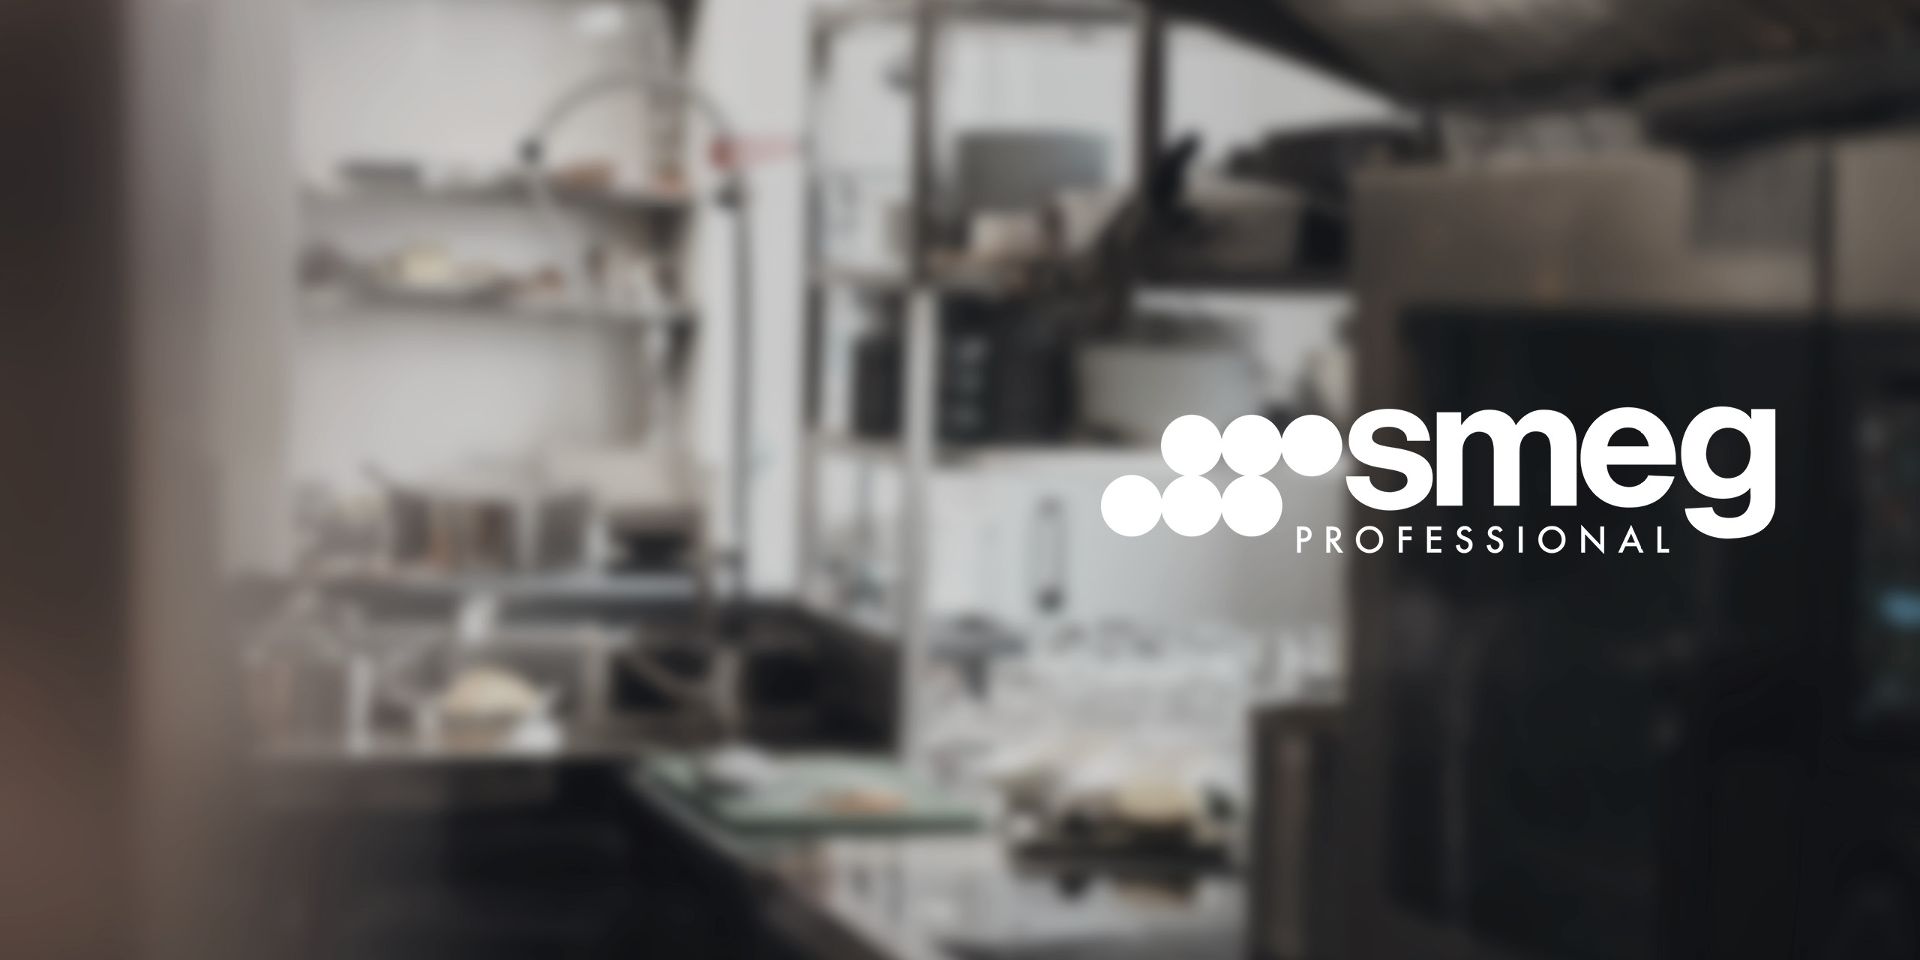 Presentamos "SMEG PROFESSIONAL": Smeg Foodservice tiene un nuevo nombre